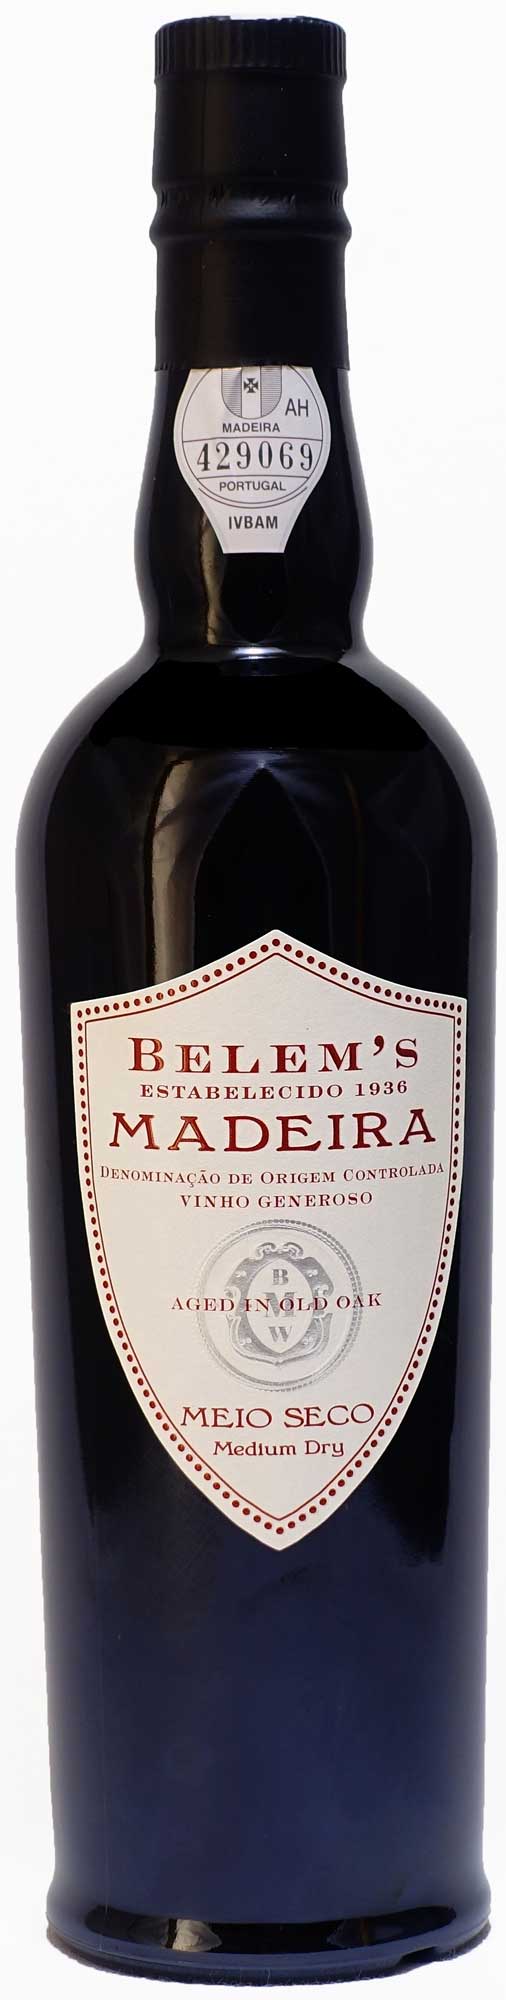 Belem's Meio Seco Medium Dry Madeira